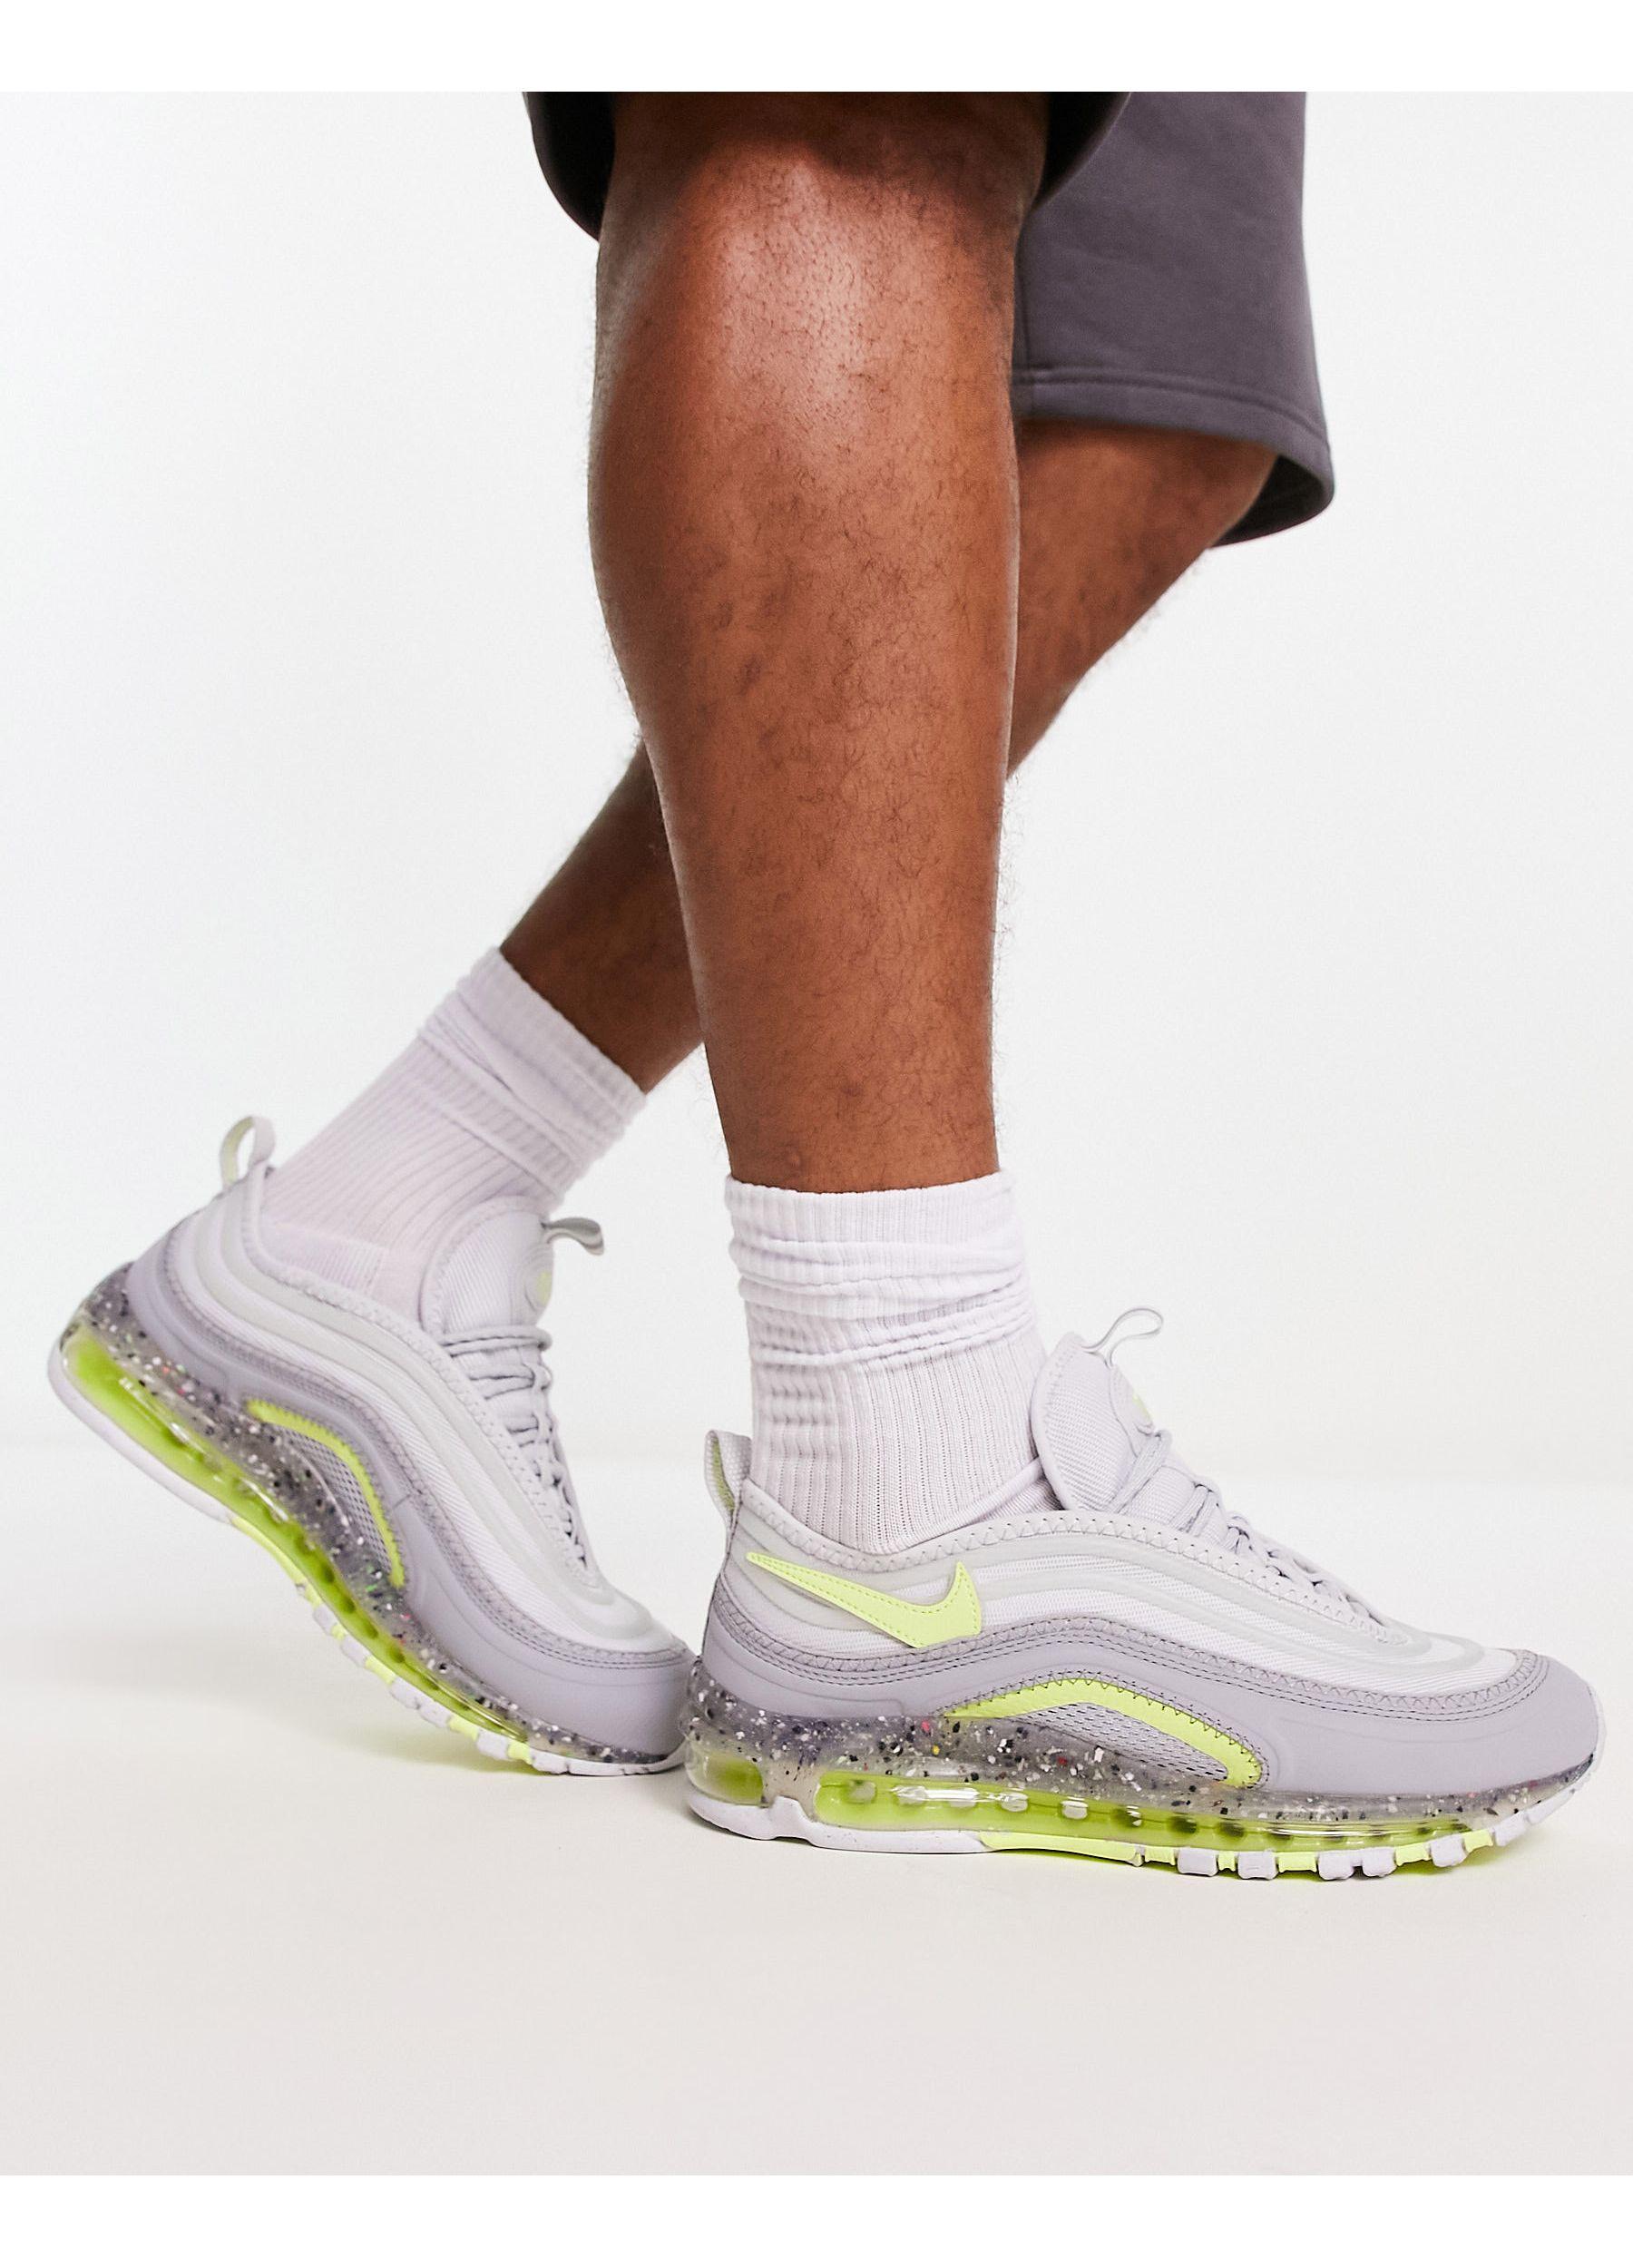 Air max terrascape 97 - sneakers grigie e gialle da Uomo di Nike in Bianco  | Lyst